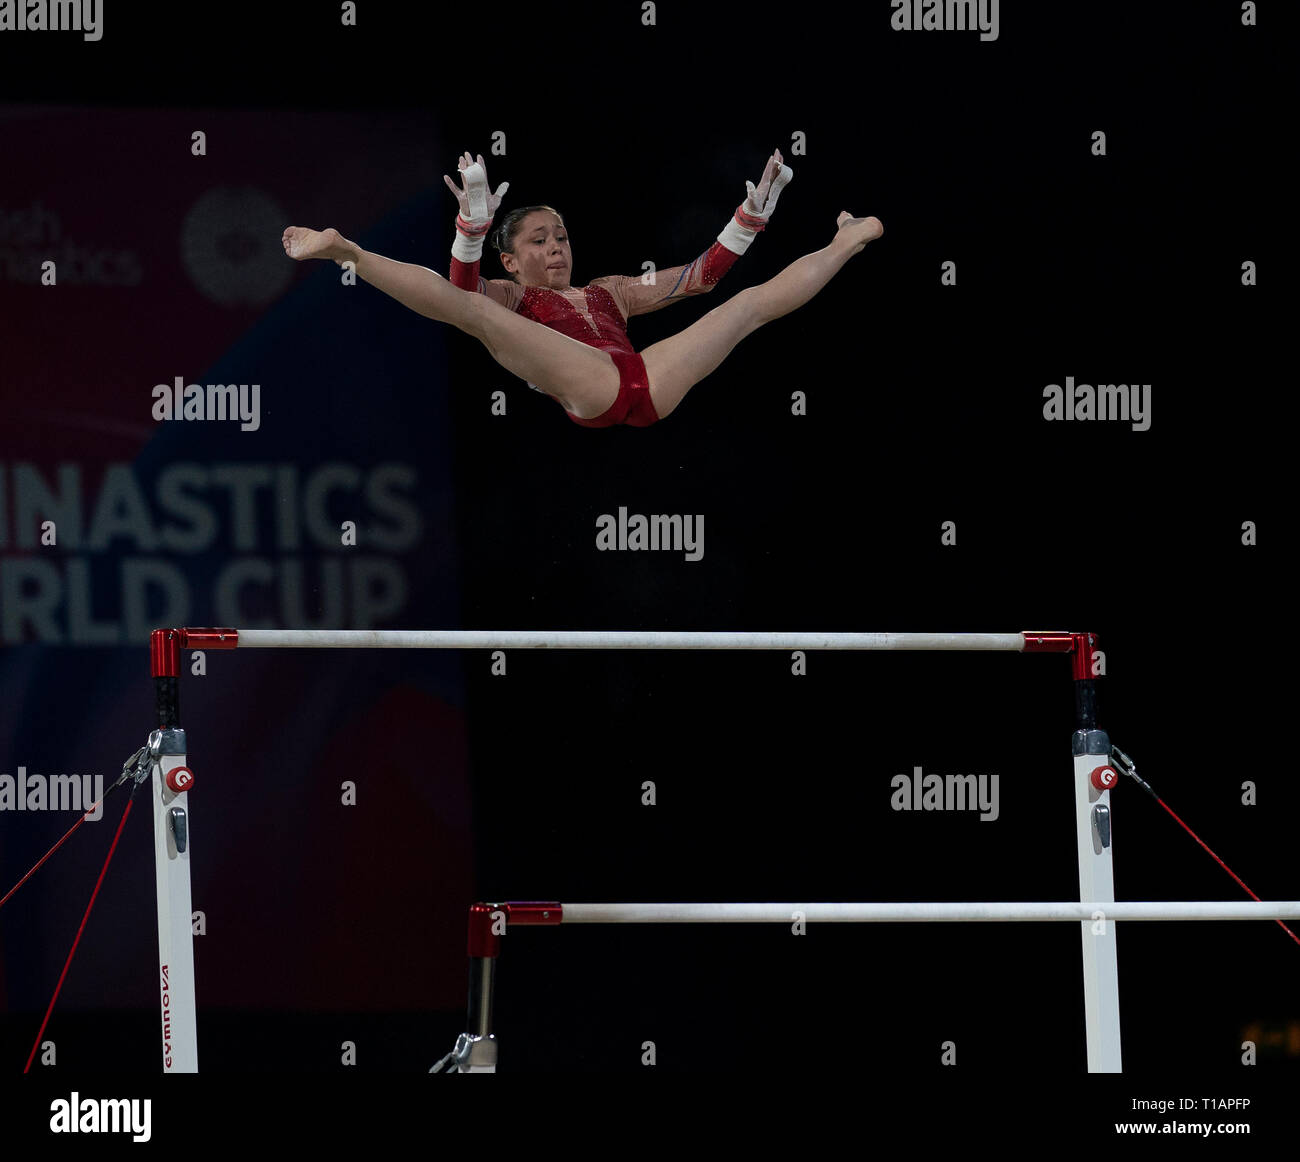 Carolann Heduit (France) vu en action lors de la Coupe du Monde de Gymnastique 2019 à Birmingham dans l'Arène de Genting. Banque D'Images